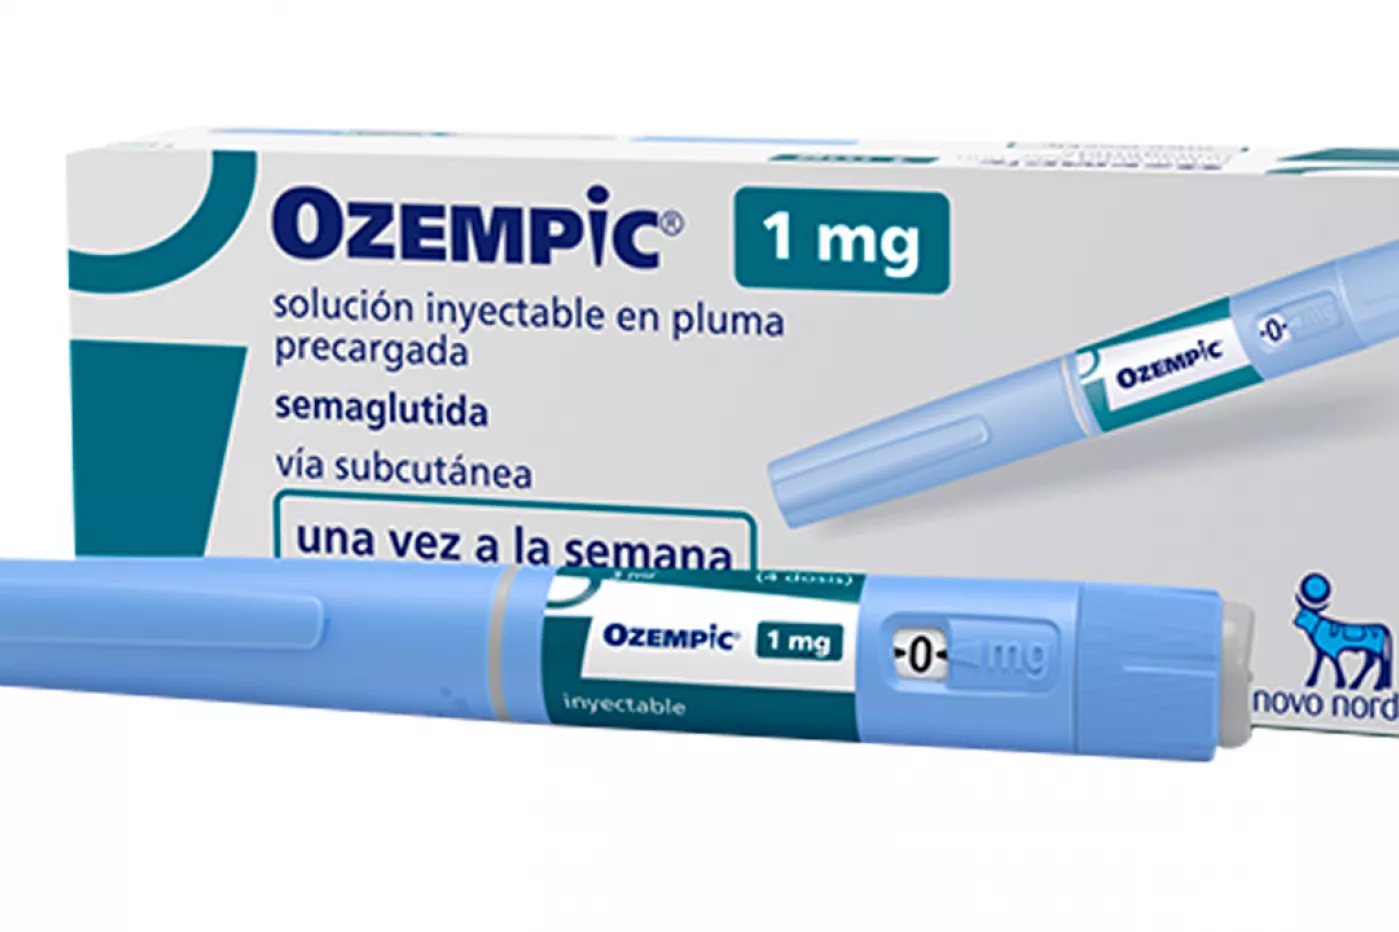 La semaglutida, el fármaco que regula el azúcar en sangre y la insulina, más conocido como Ozempic. Foto: DM